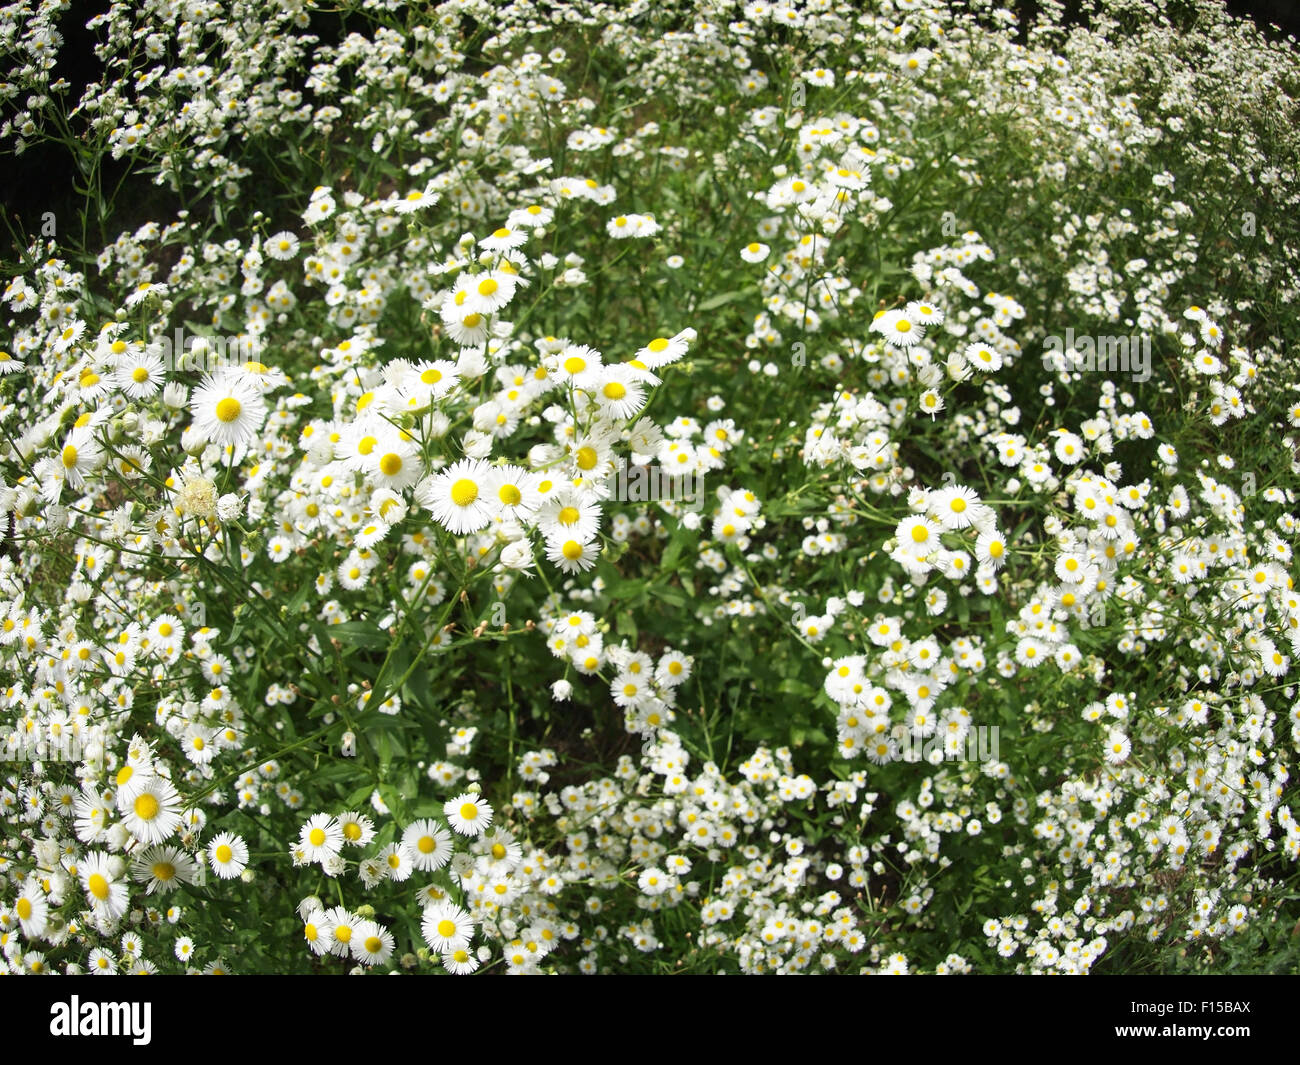 Grand terrain envahi par les petits blancs des fleurs dans l'herbe verte, des connaissances nouvelles et de plus en plus floue dans l'arrière-plan Banque D'Images